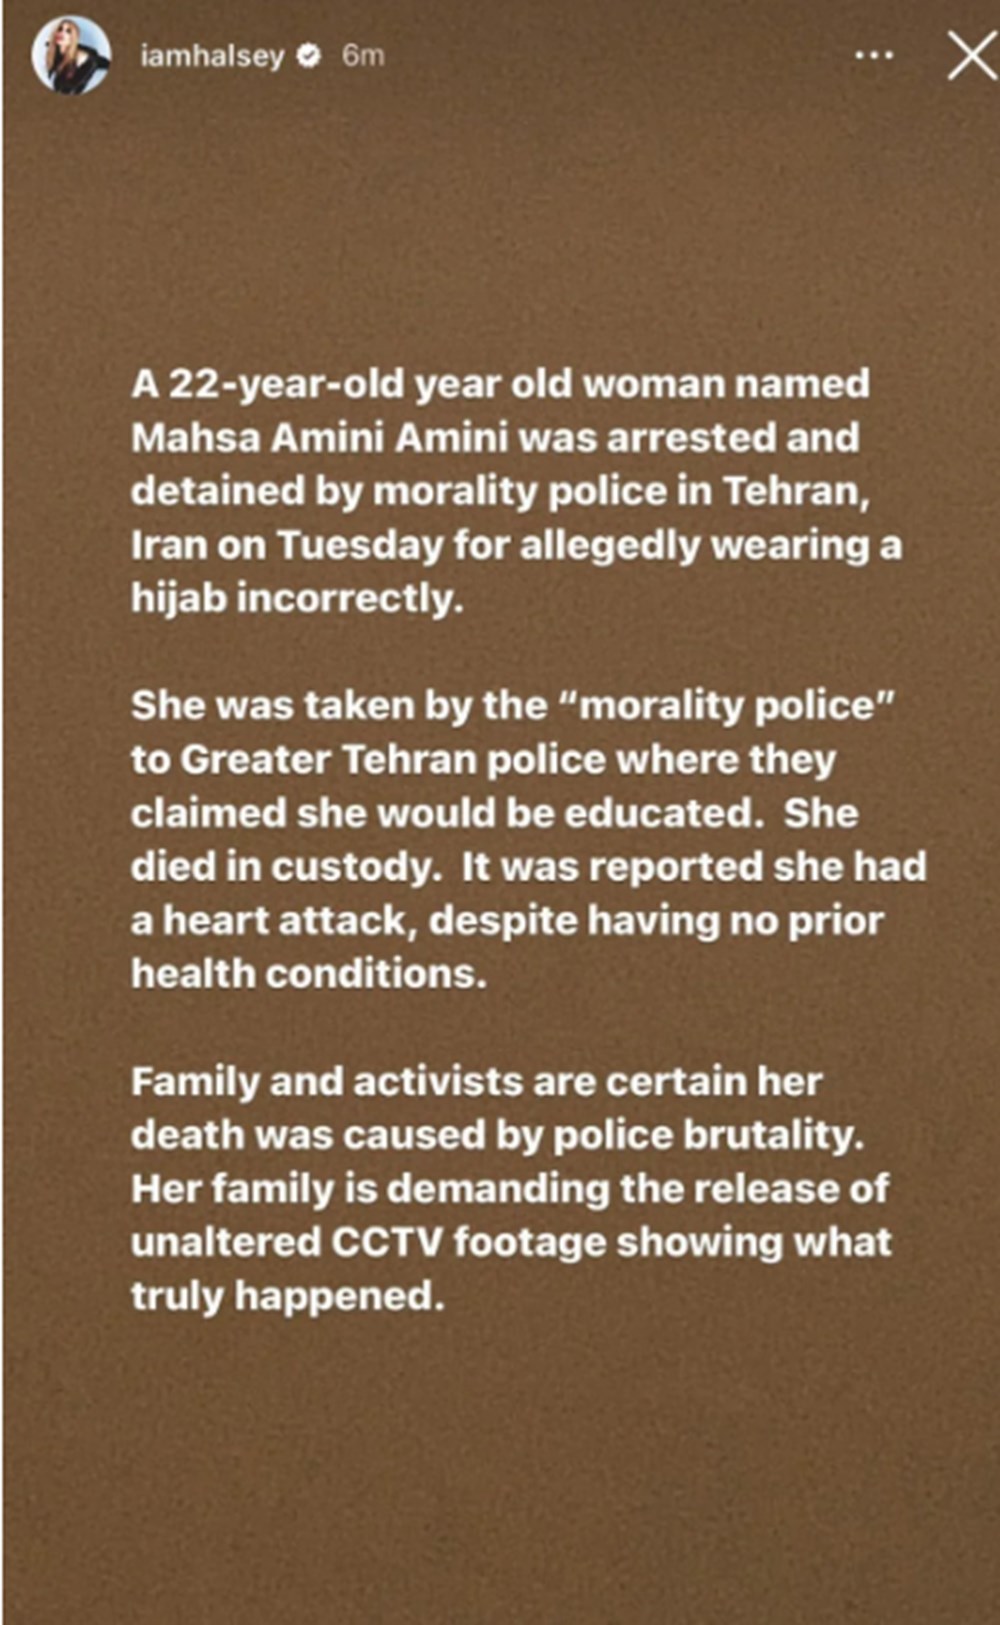 İranlı Mahsa Amini'nin ölümüne ünlü isimlerden gelen tepkiler - 2